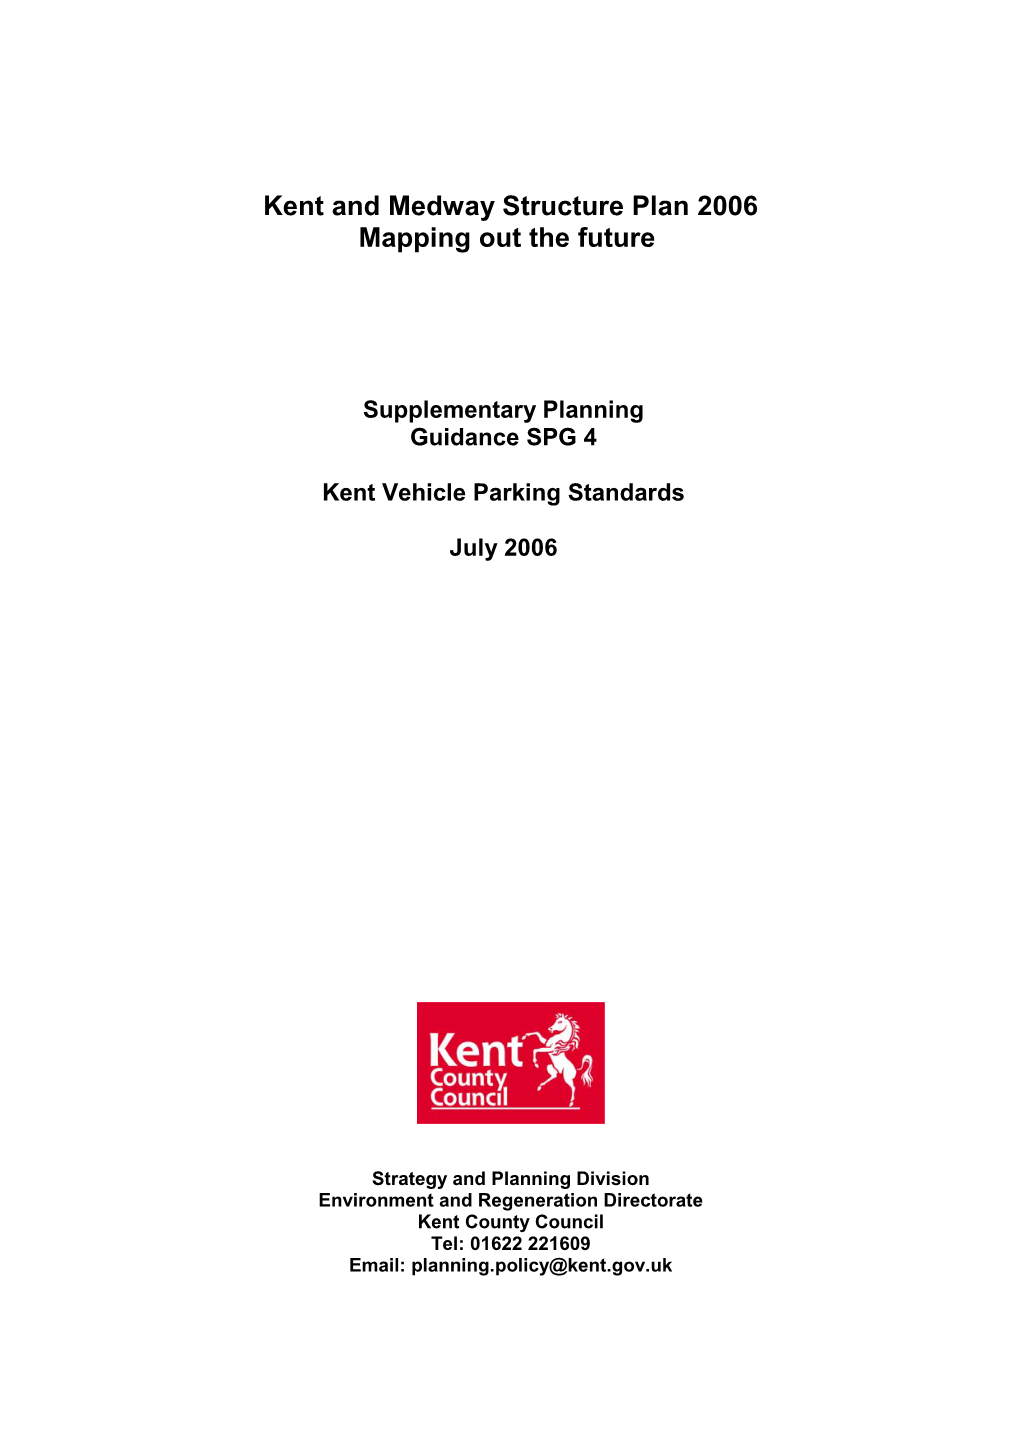 Kent & Medway Structure Plan 2006: SPG4 Vehicle Parking Standards